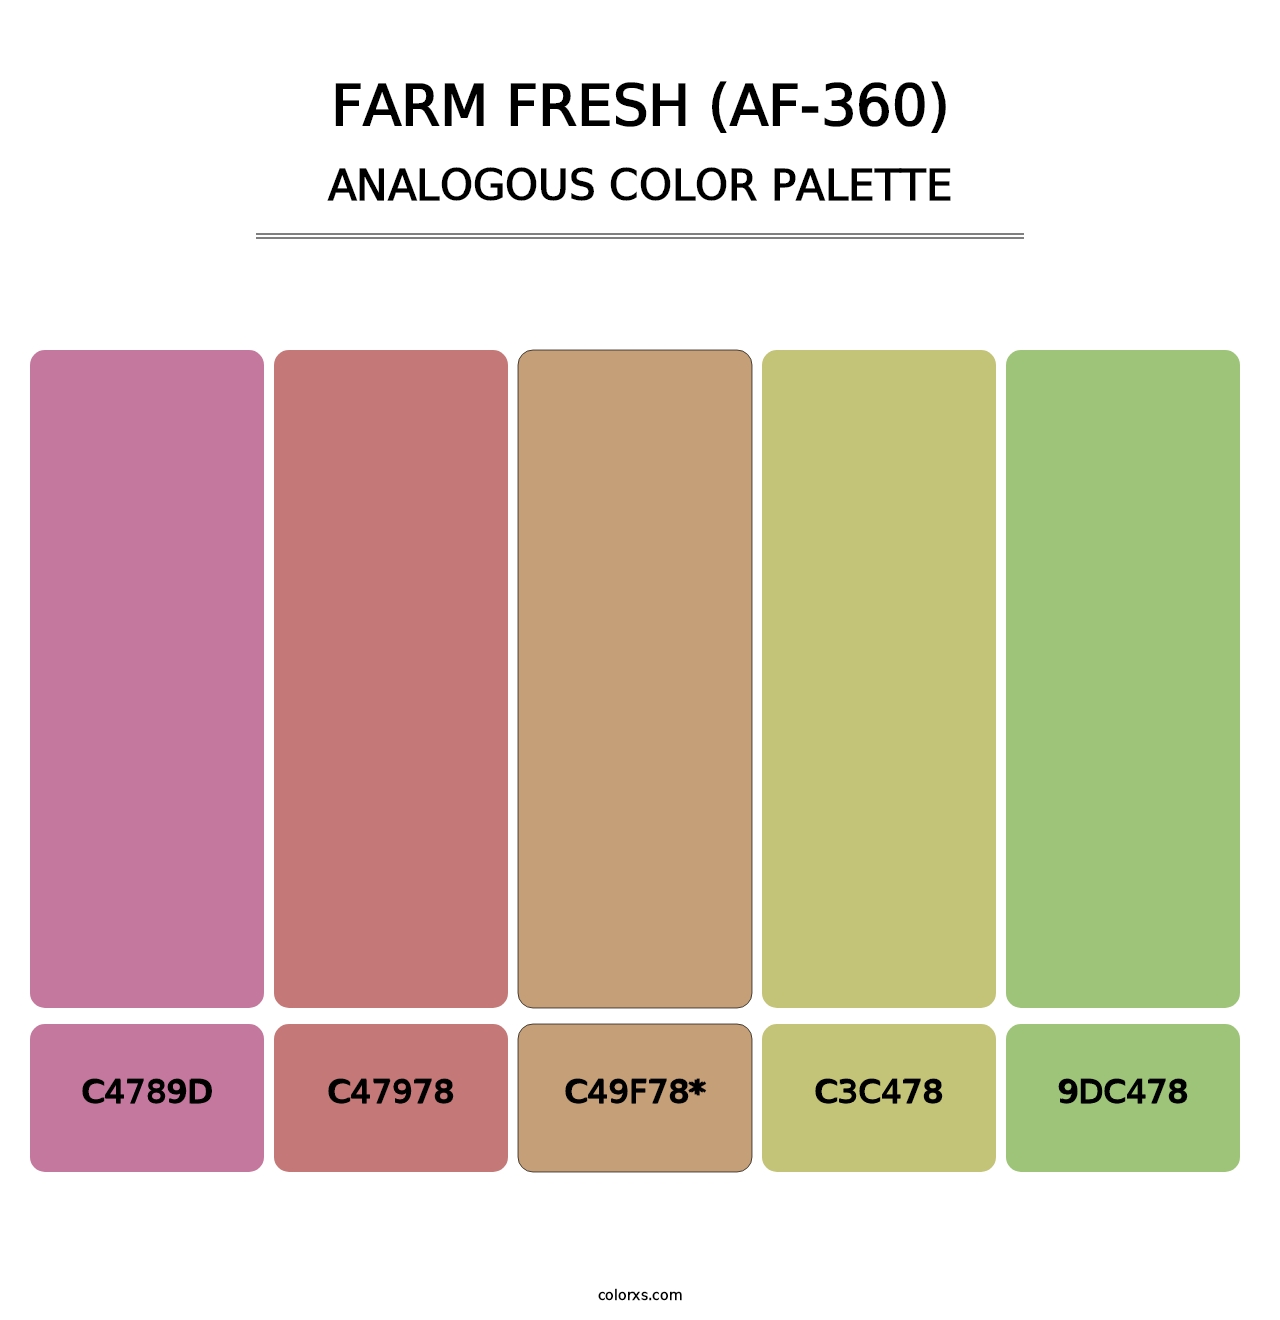 Farm Fresh (AF-360) - Analogous Color Palette